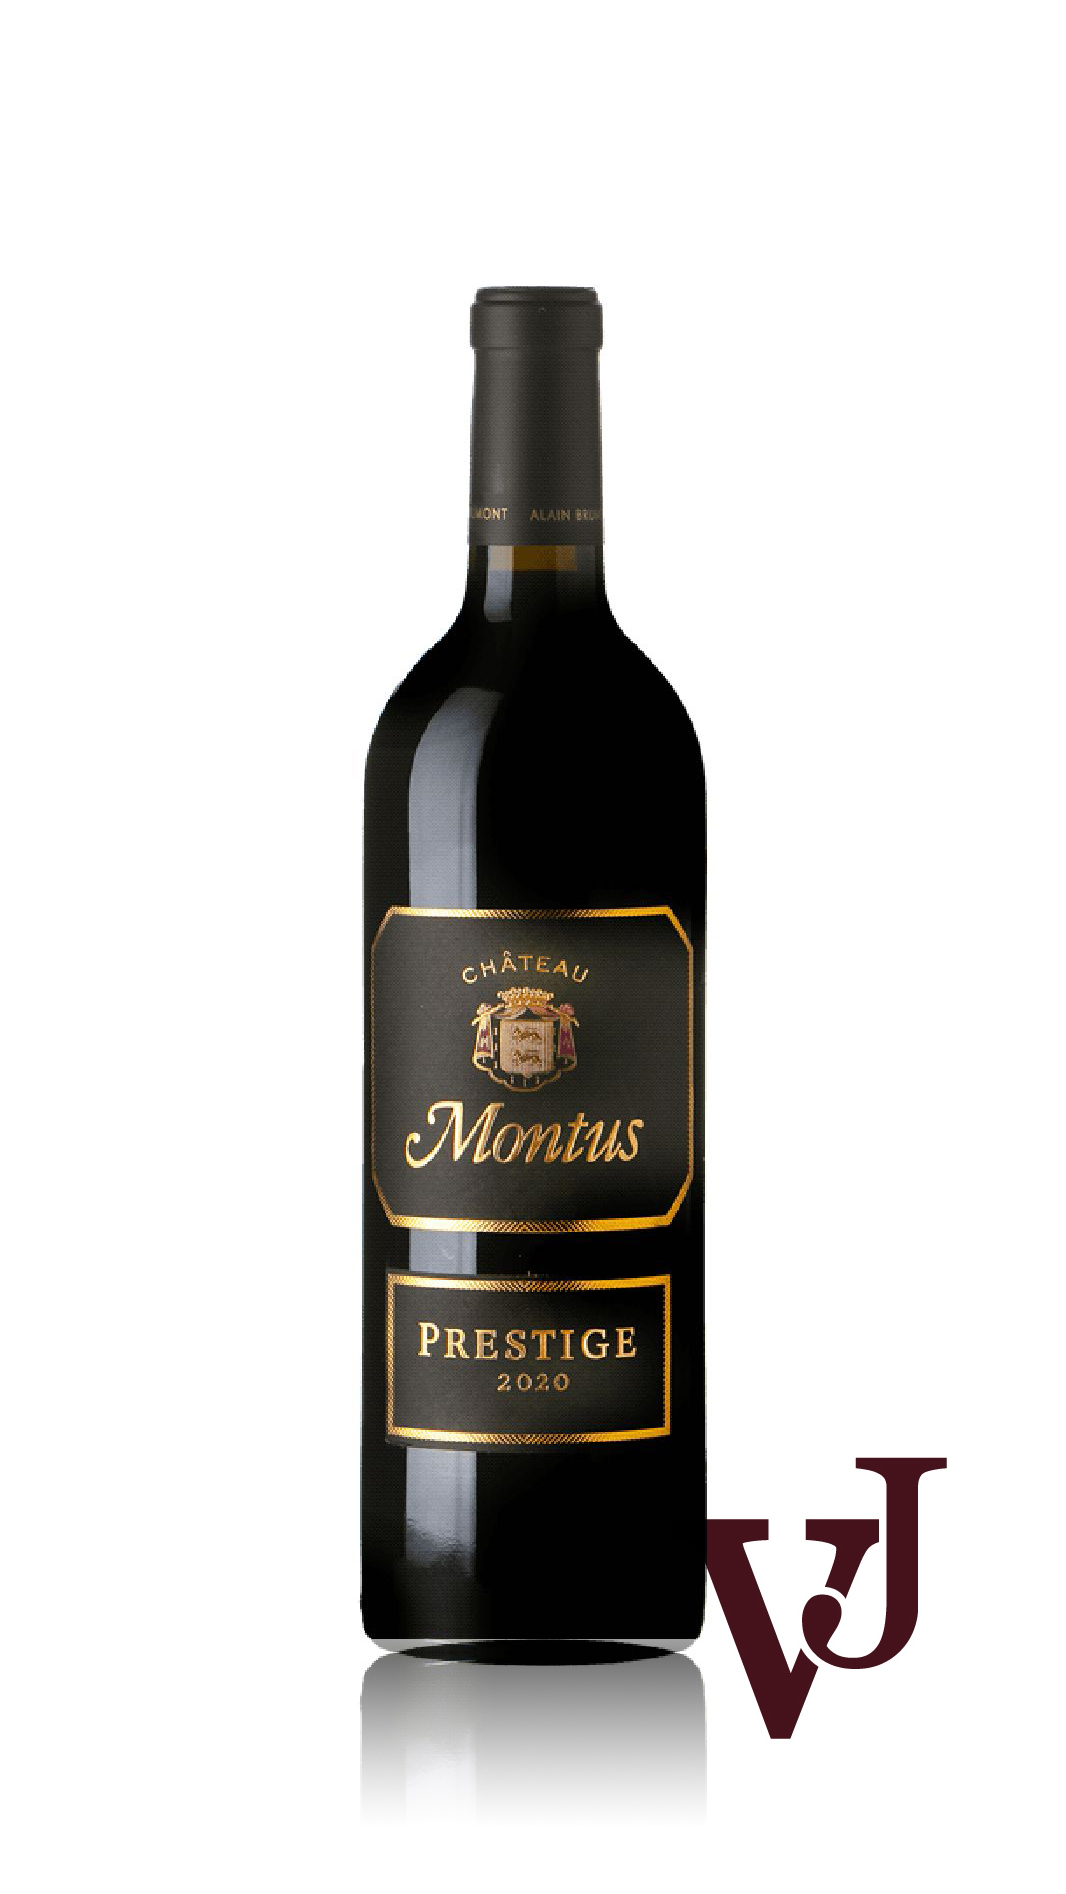 Rött Vin - Château Montus Prestige Alain Brumont 2020 artikel nummer 9335101 från producenten Alain Brumont från området Chile